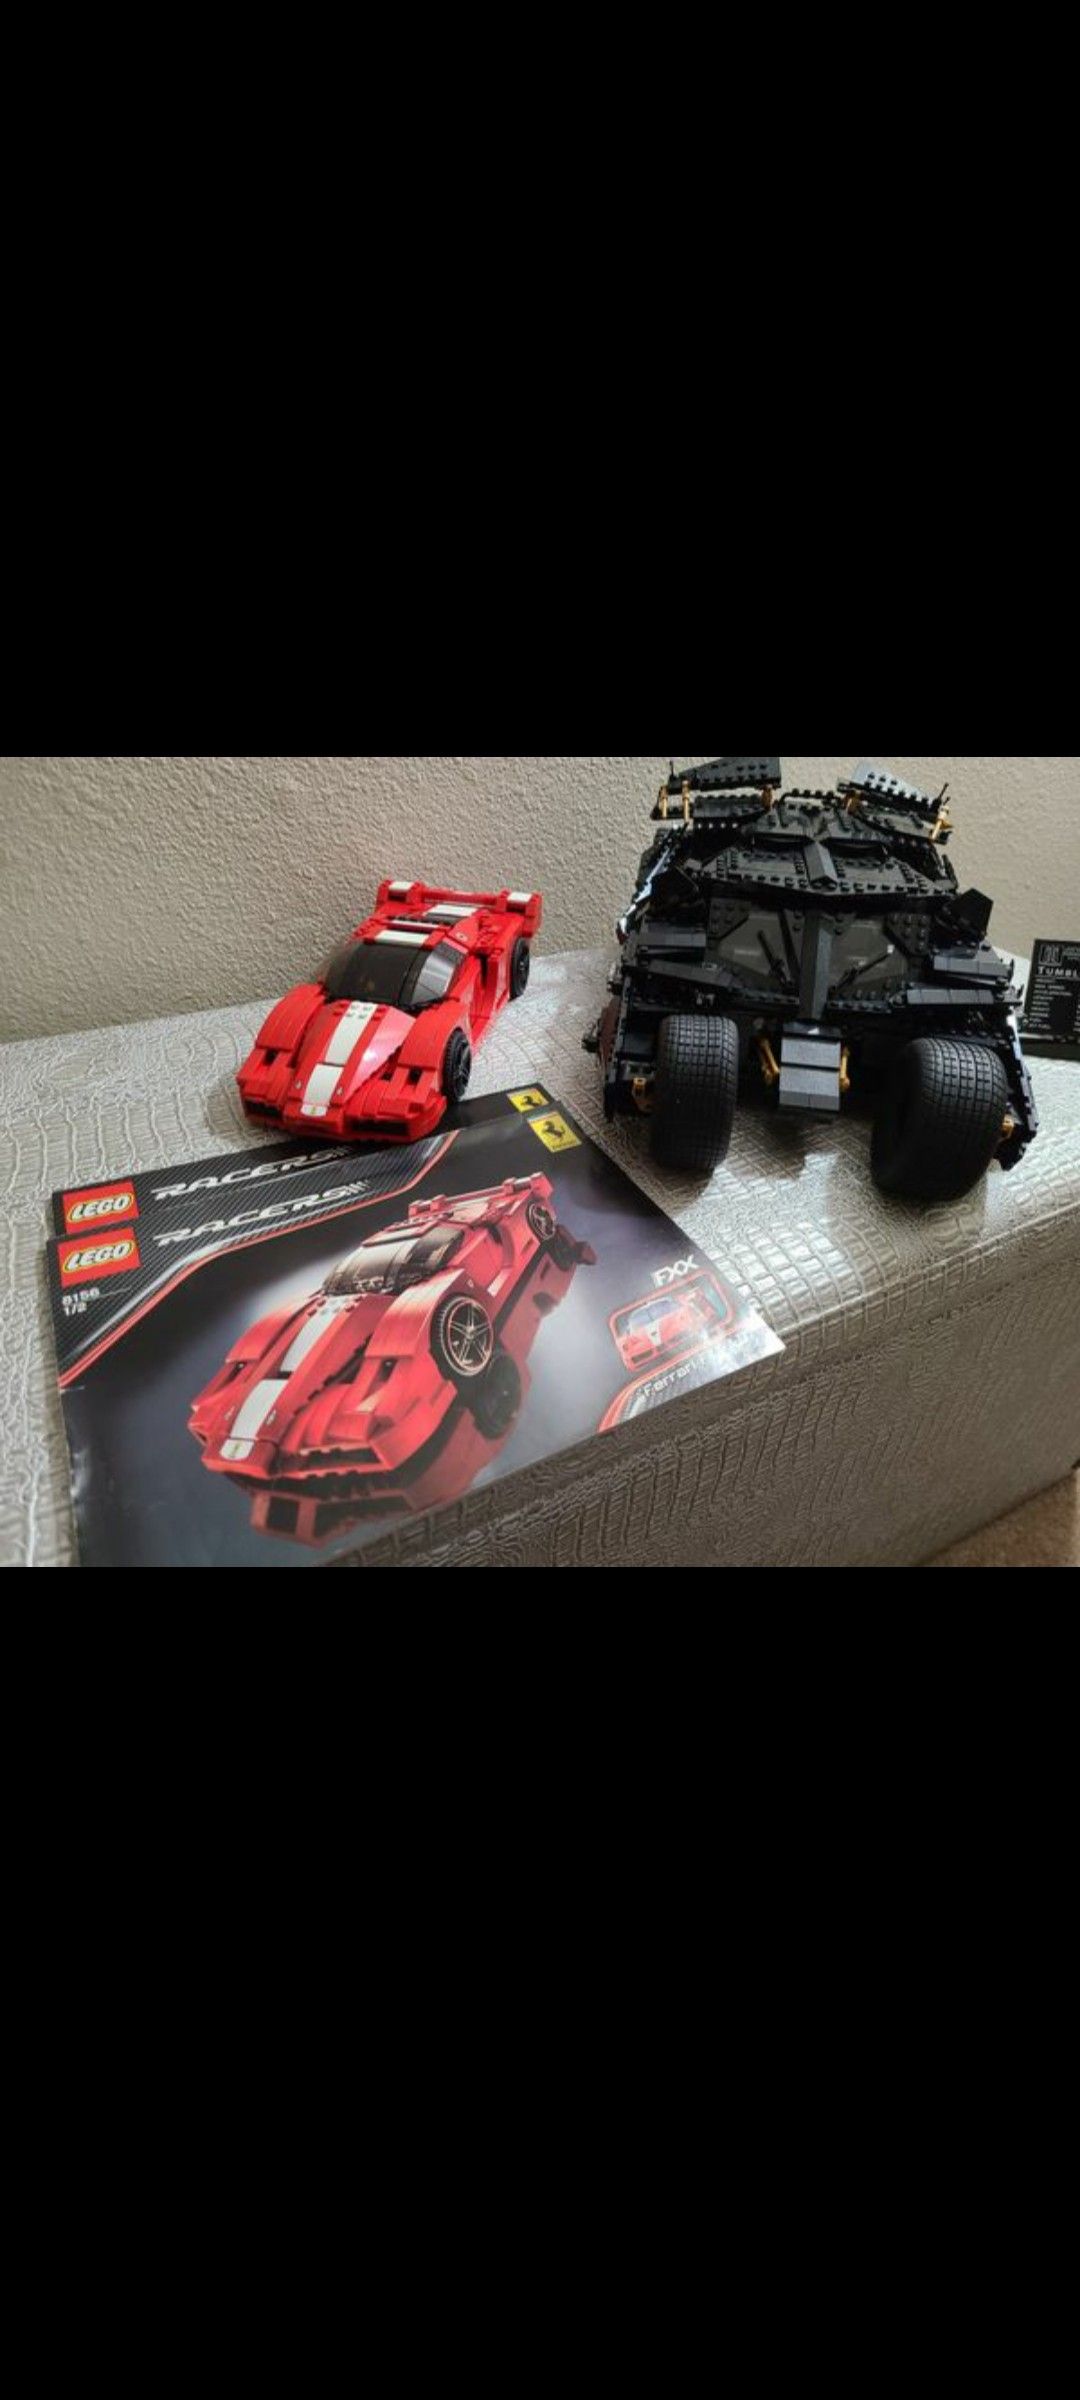 Bundle Lego batman tumbler #76023 and Ferrari fXX 1:17 #8156 .